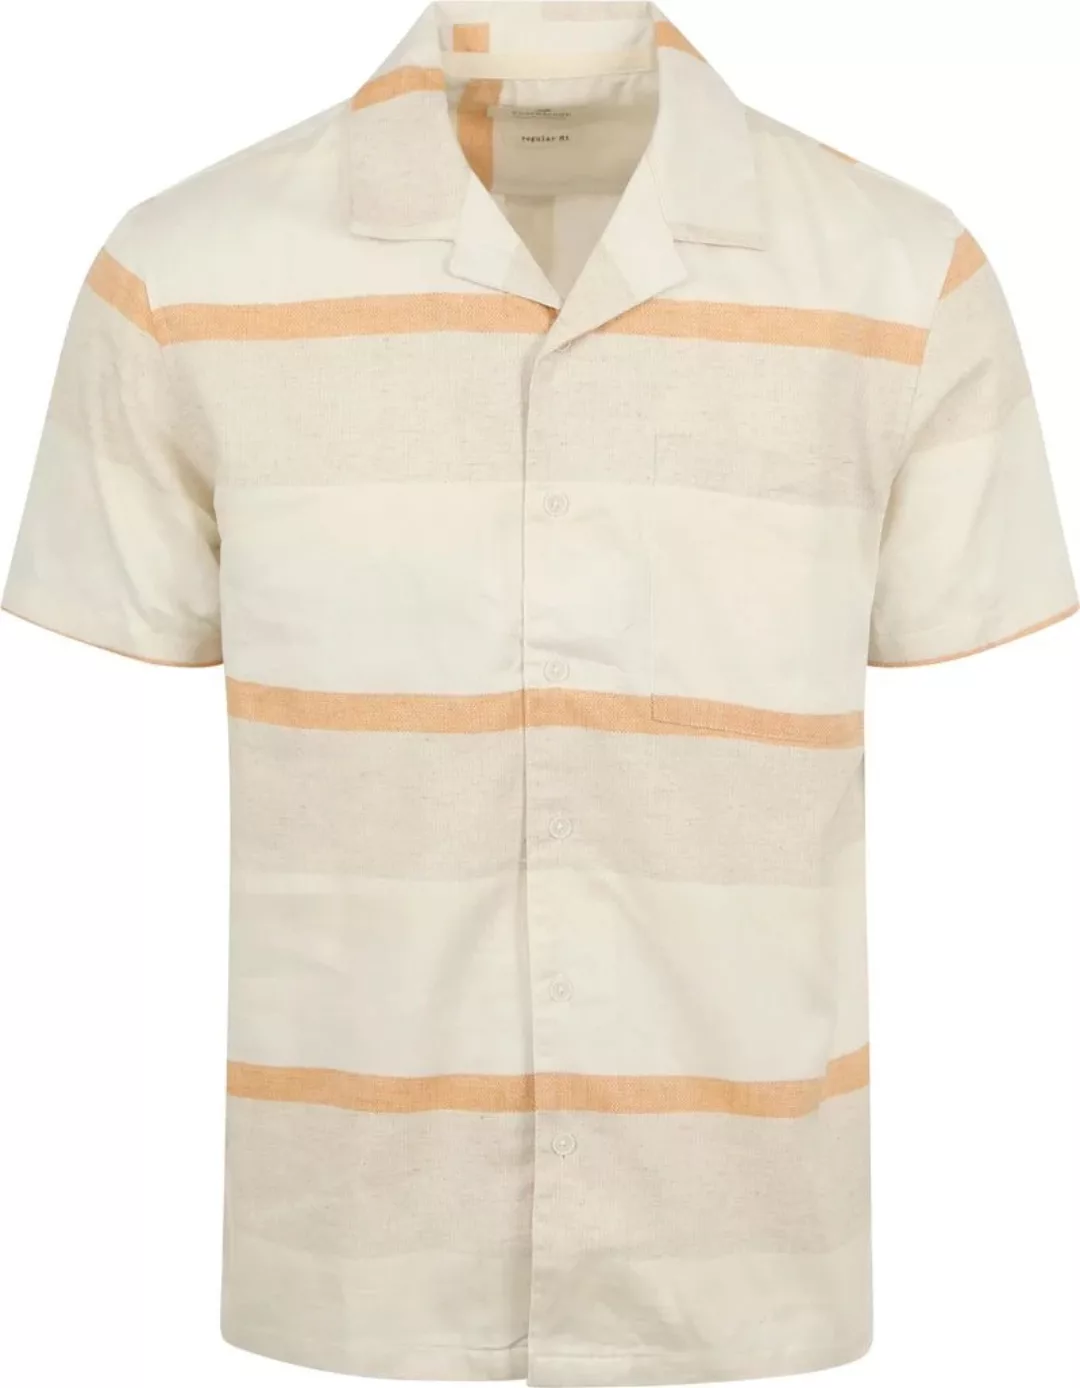 Anerkjendt Short Sleeve Hemd Leo Leinen Streifen Ecru - Größe L günstig online kaufen